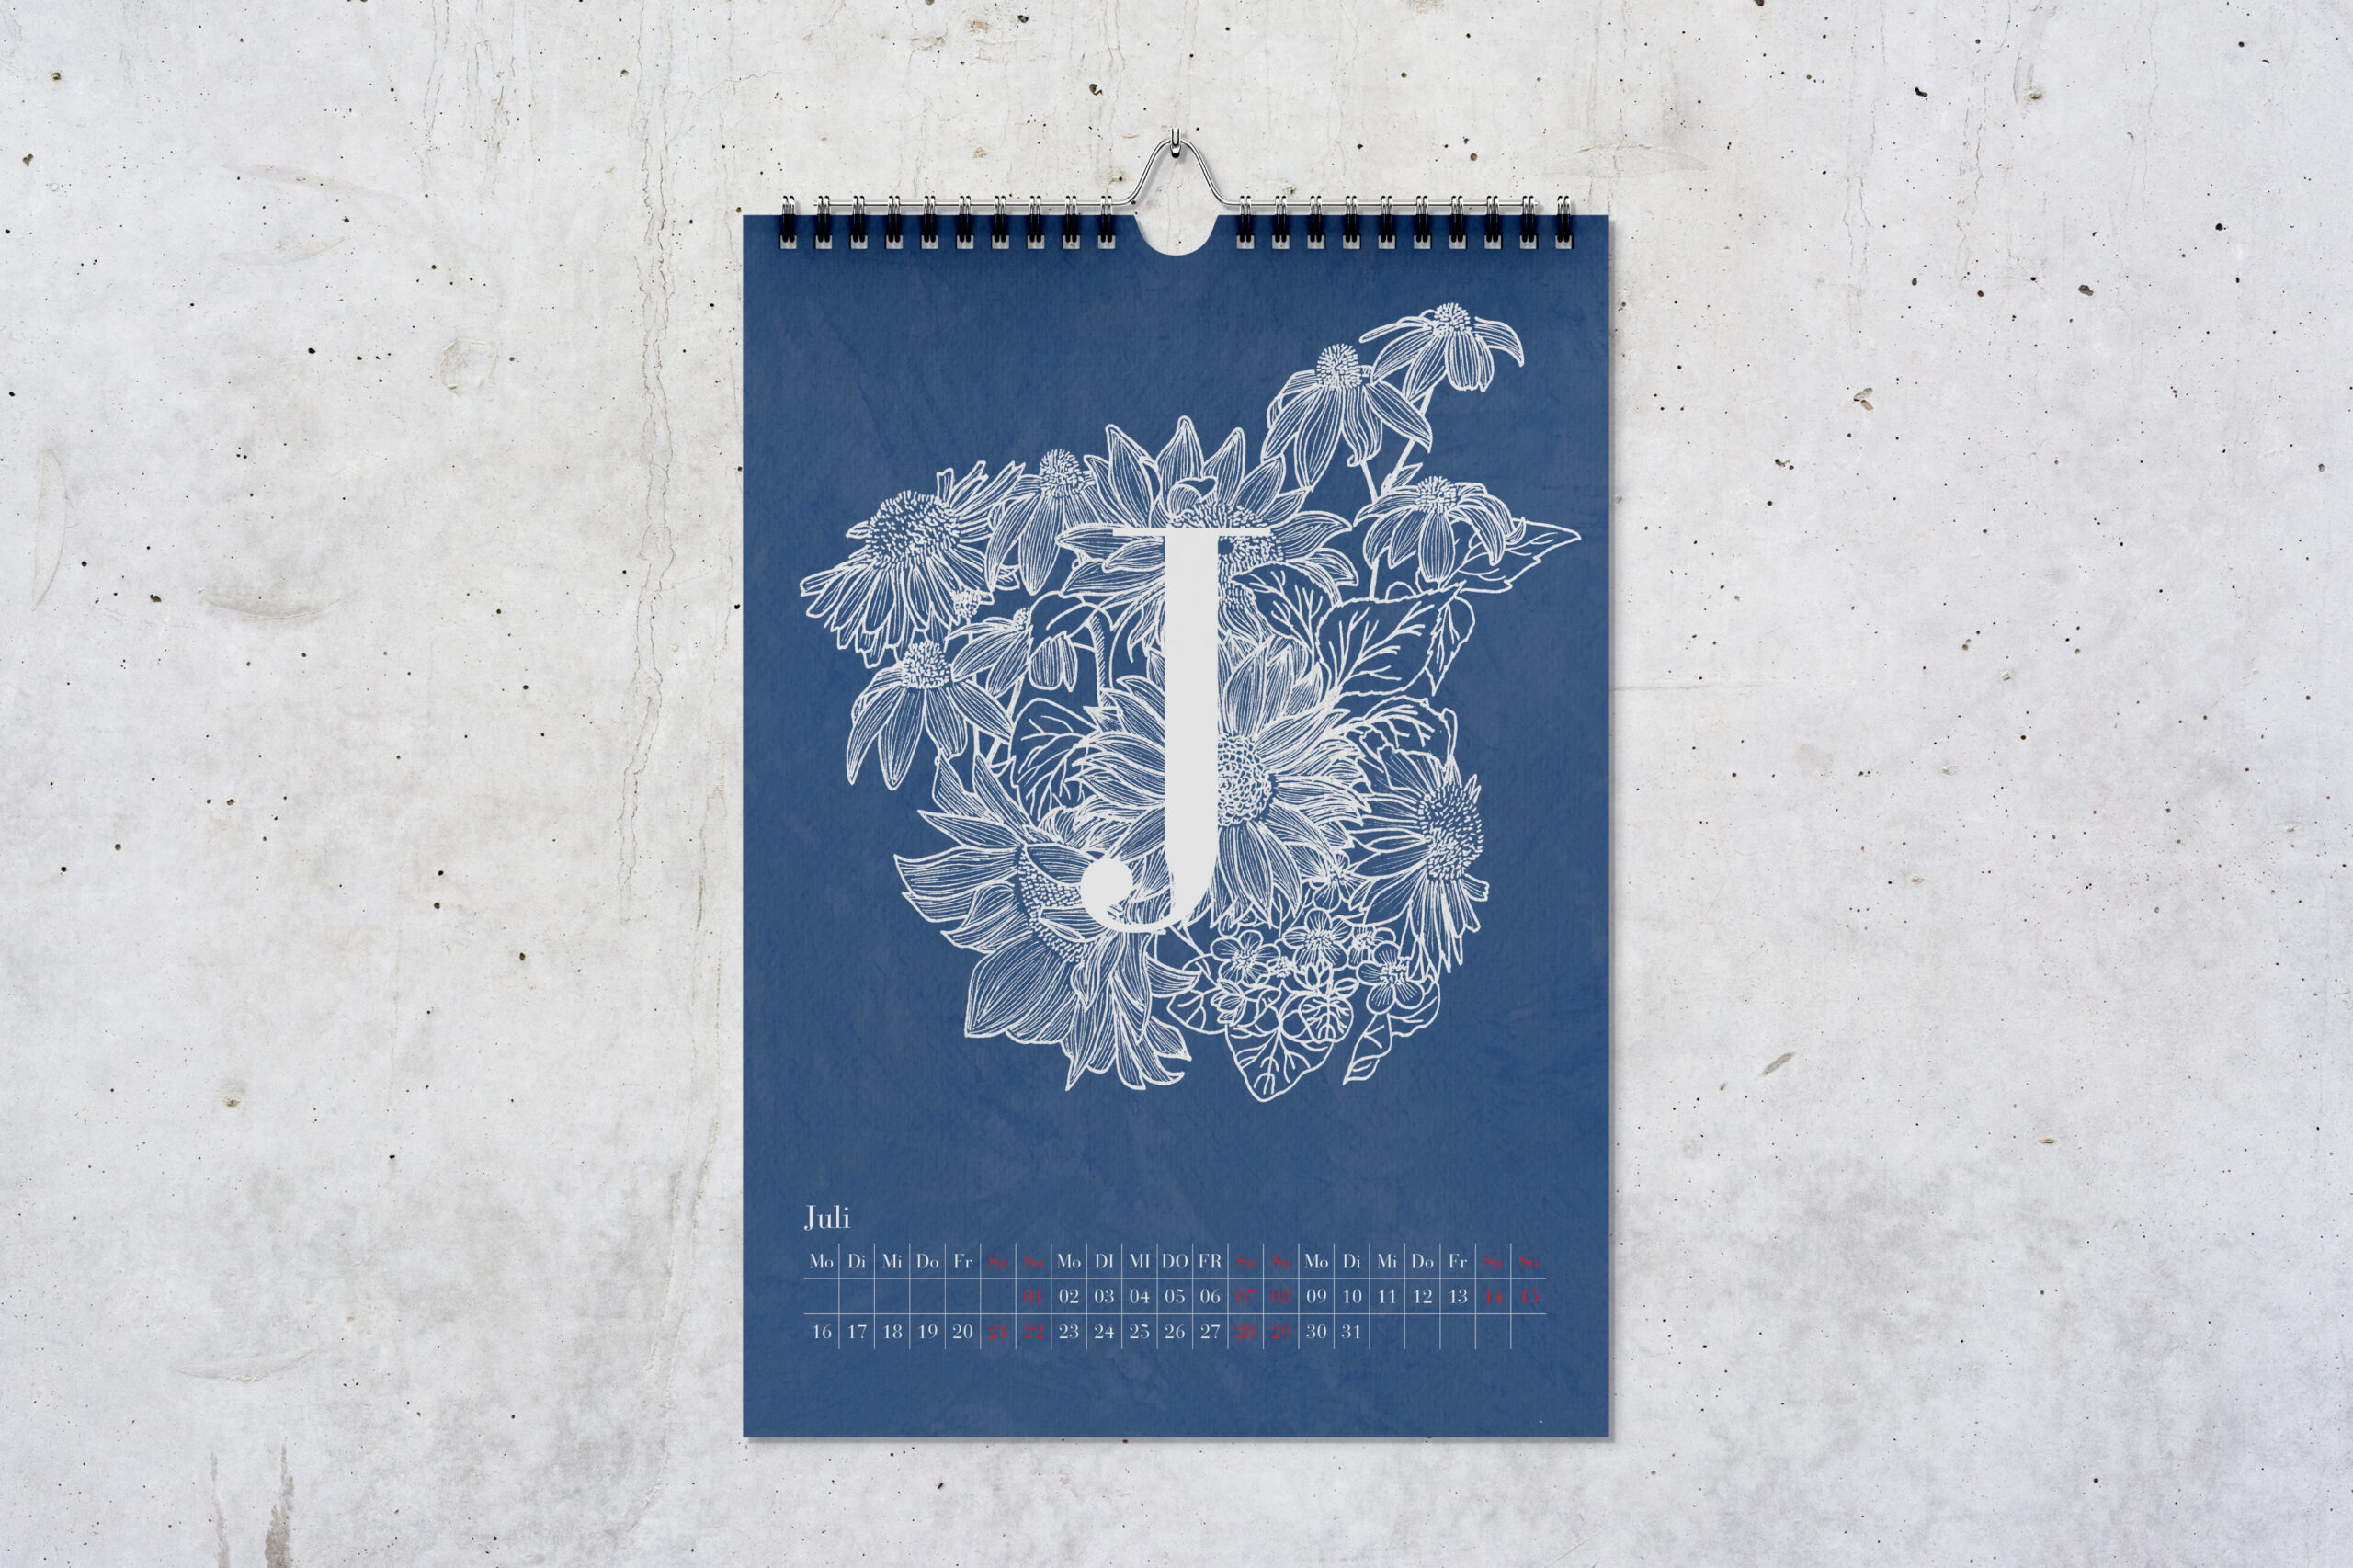 Kalenderblatt für Juli, mit einem großen weißen J vor Zeichnungen von Blumen in weiß vor blauem Hintergrund.